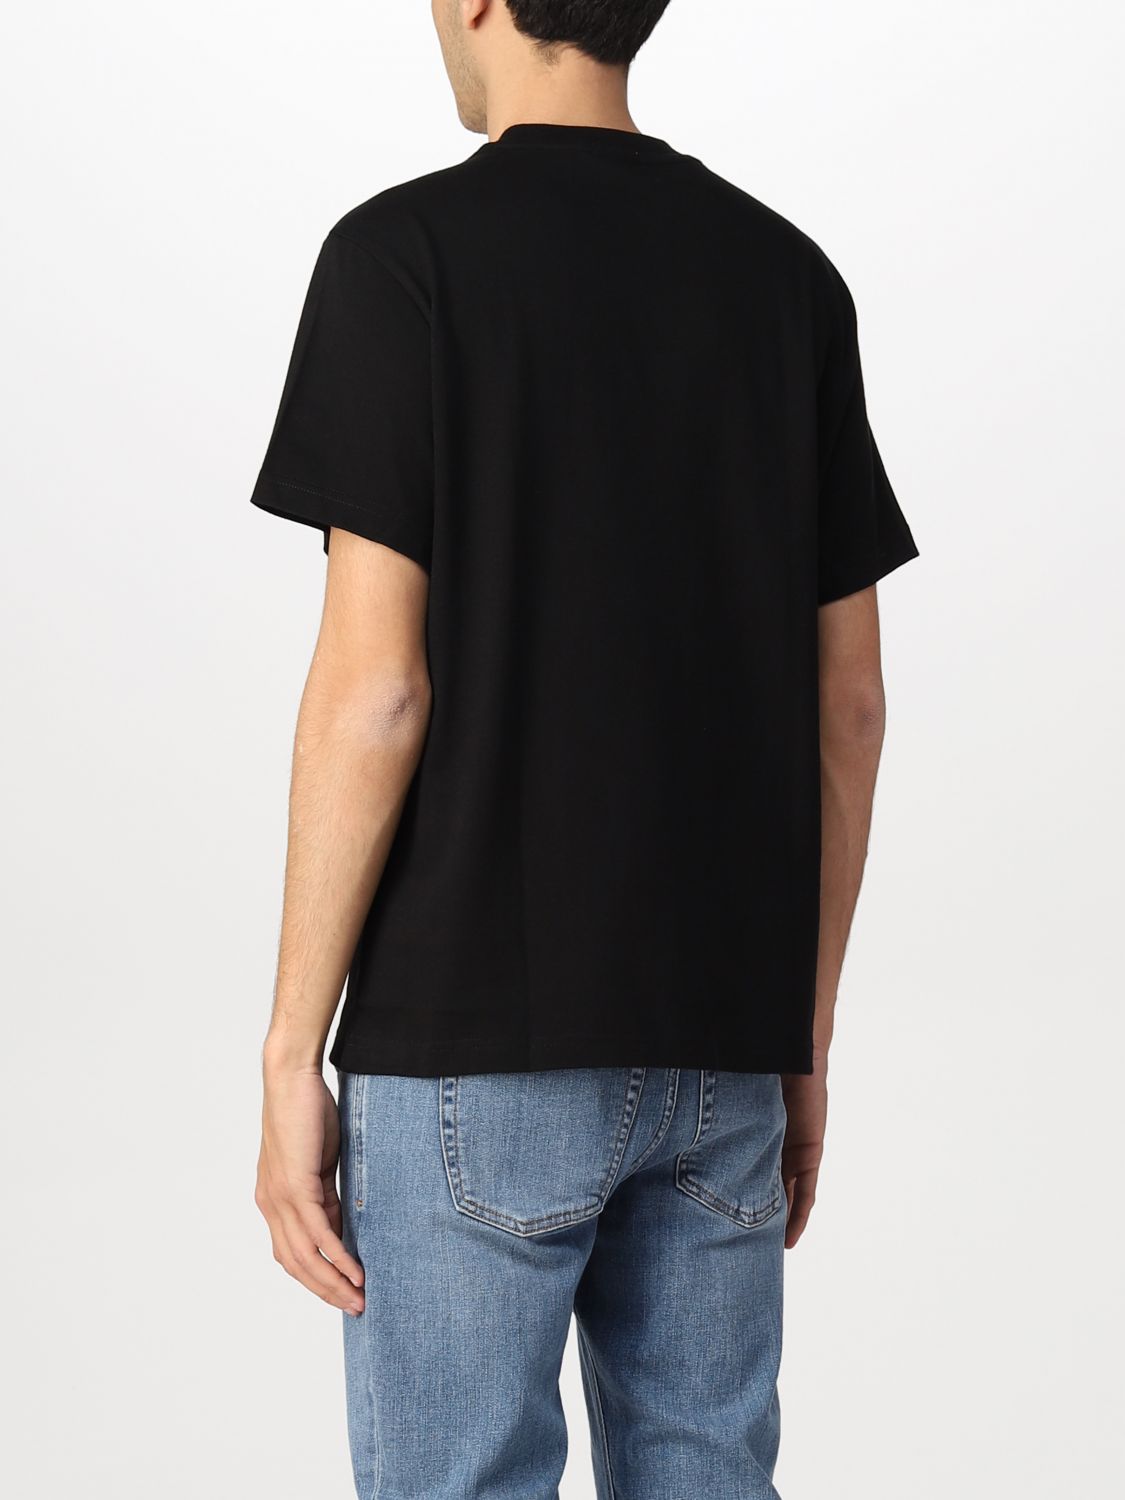 T-shirt Lacoste L!Ve: Lacoste L! Ve t-shirt in cotton with logo black 2